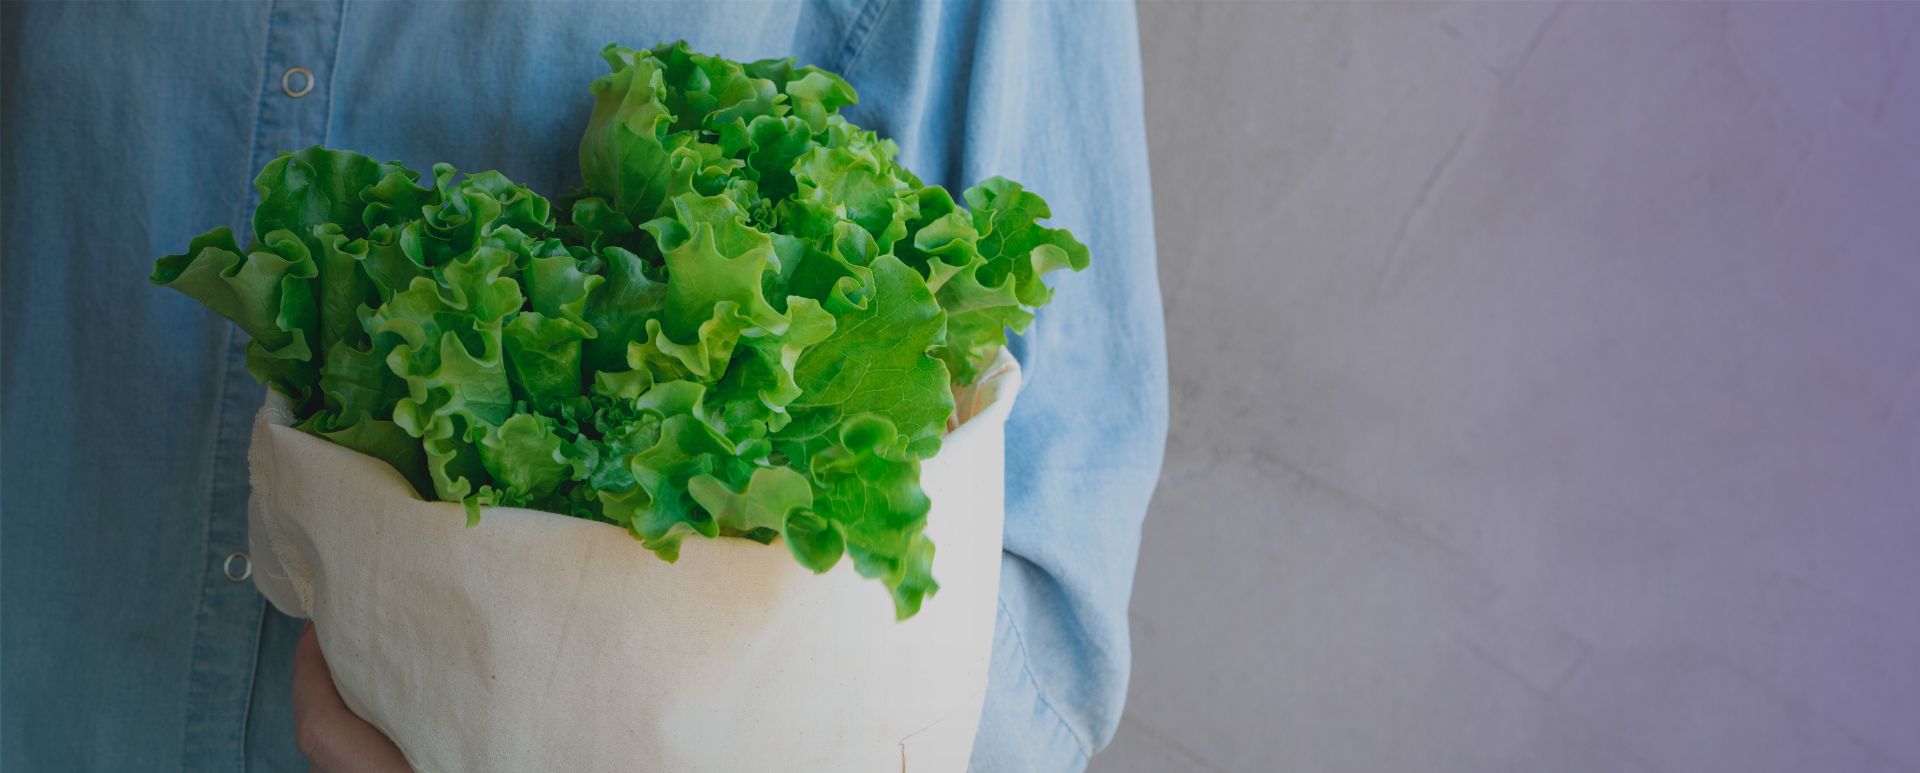 insalata in sacchetto riciclabile